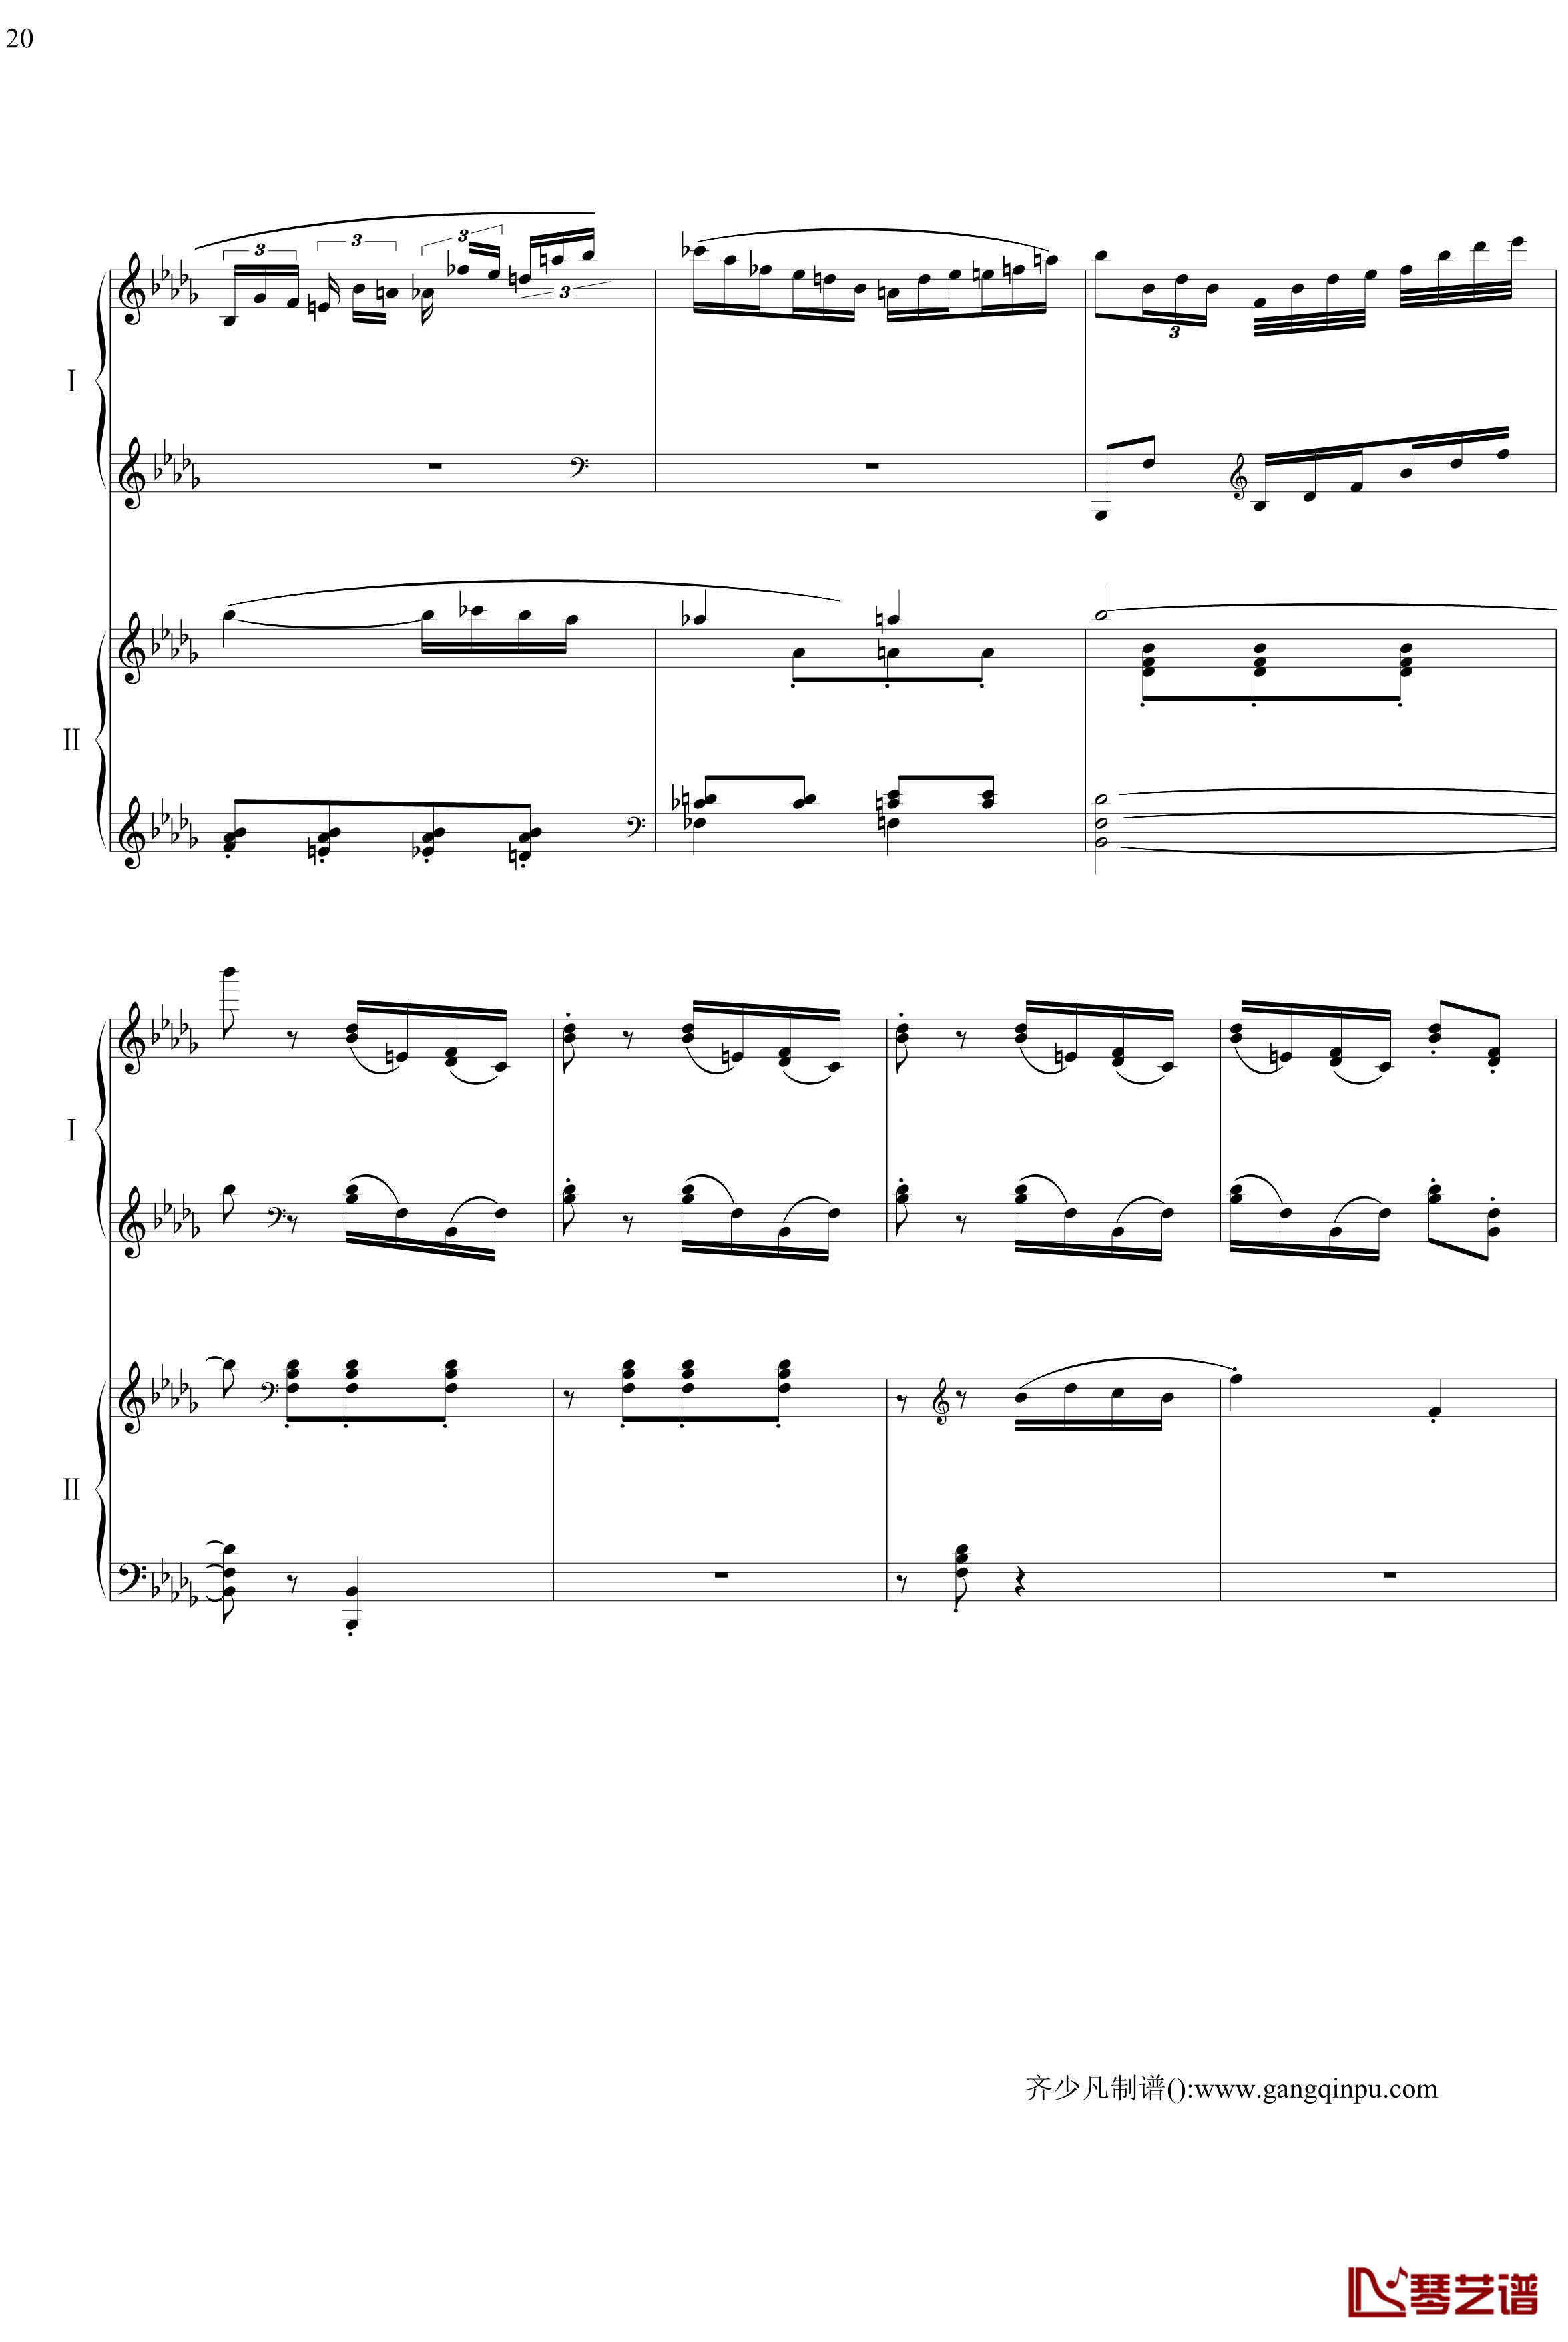 帕格尼尼主题狂想曲钢琴谱-11~18变奏-拉赫马尼若夫20